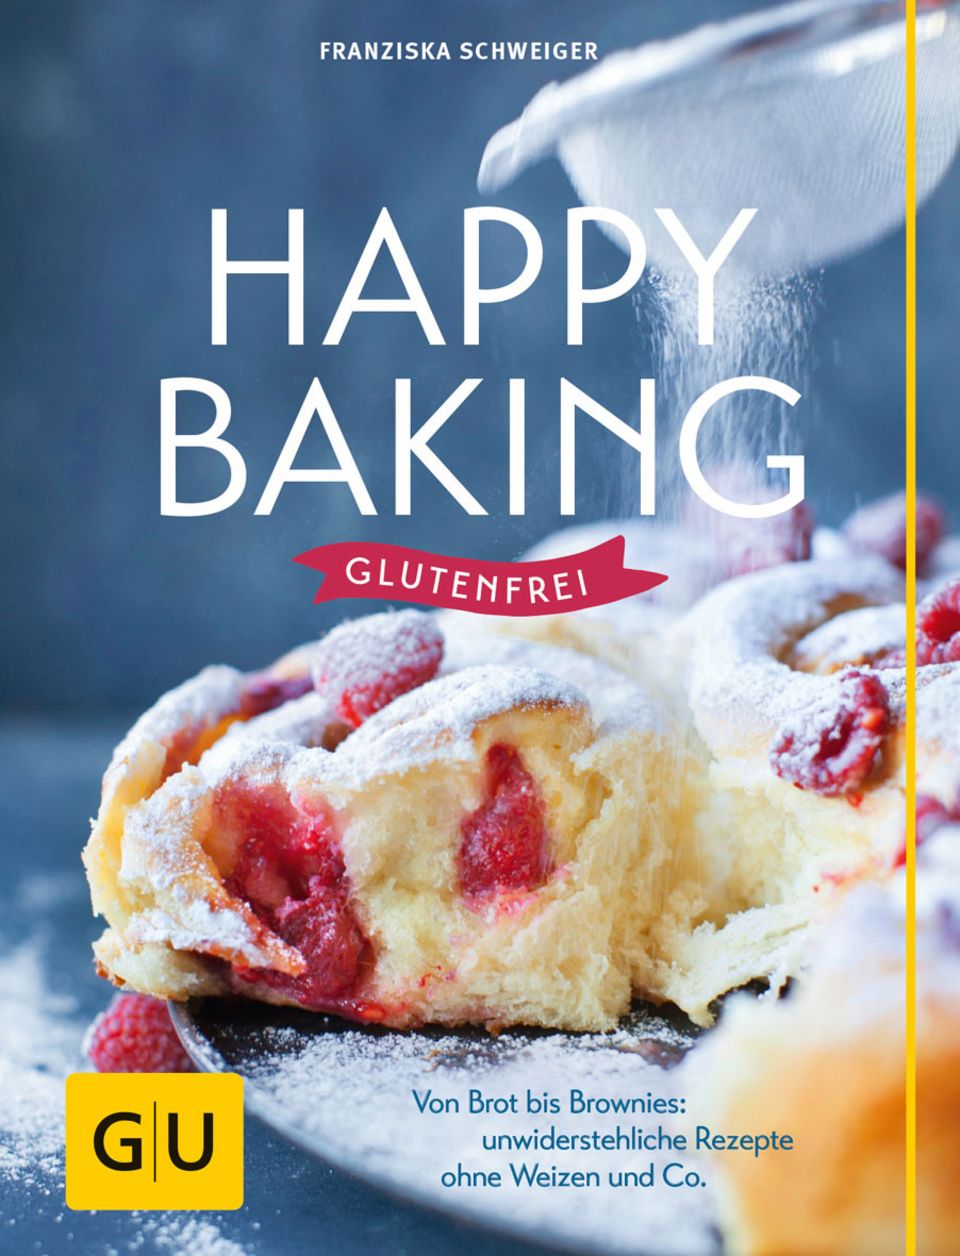 Buch: Happy baking glutenfrei